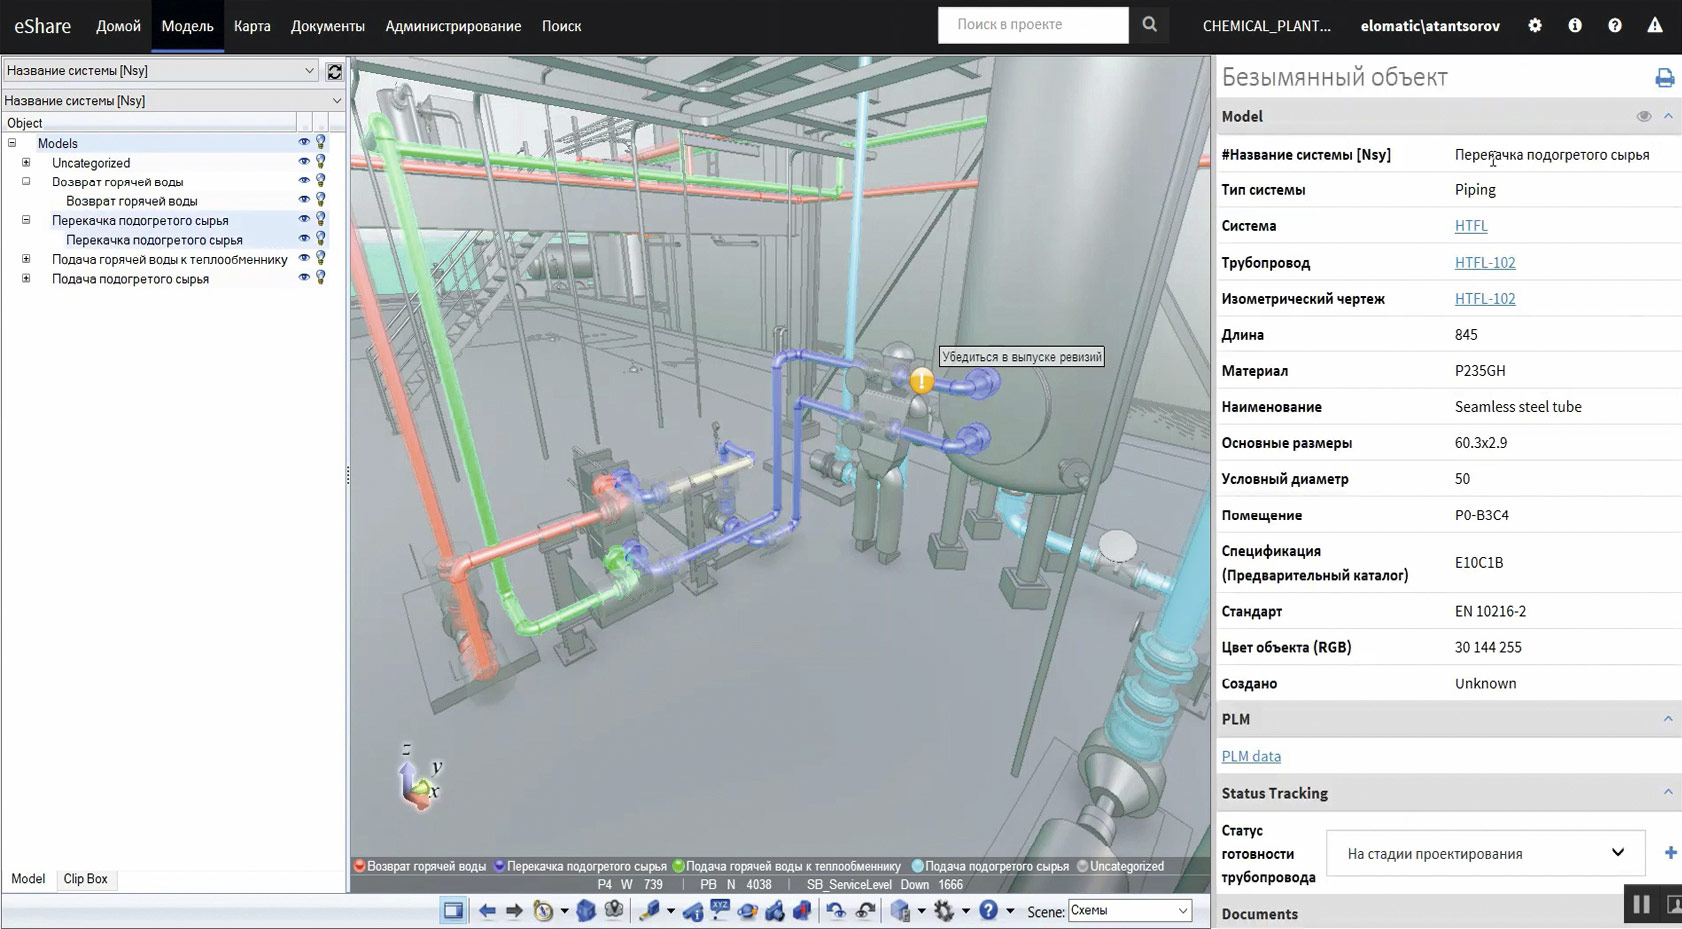 Рис. 1. 3D-панель для информации о строительстве: выбор иерархии моделей в соответствии с категориями приоритетности строительства и цвета на основе данных анализа строительства